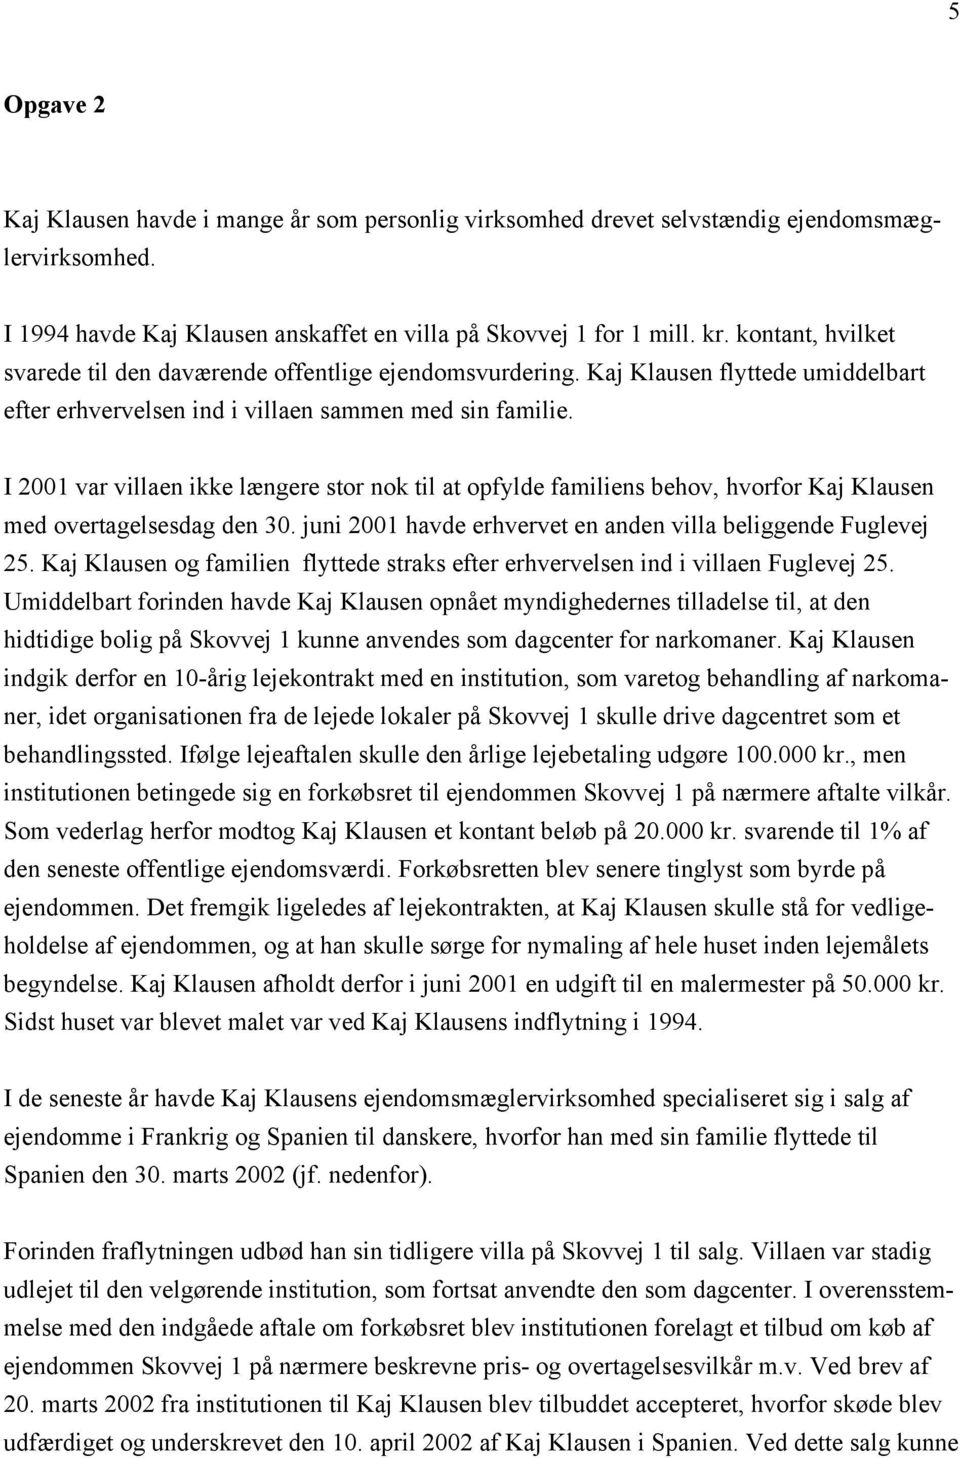 I 2001 var villaen ikke længere stor nok til at opfylde familiens behov, hvorfor Kaj Klausen med overtagelsesdag den 30. juni 2001 havde erhvervet en anden villa beliggende Fuglevej 25.